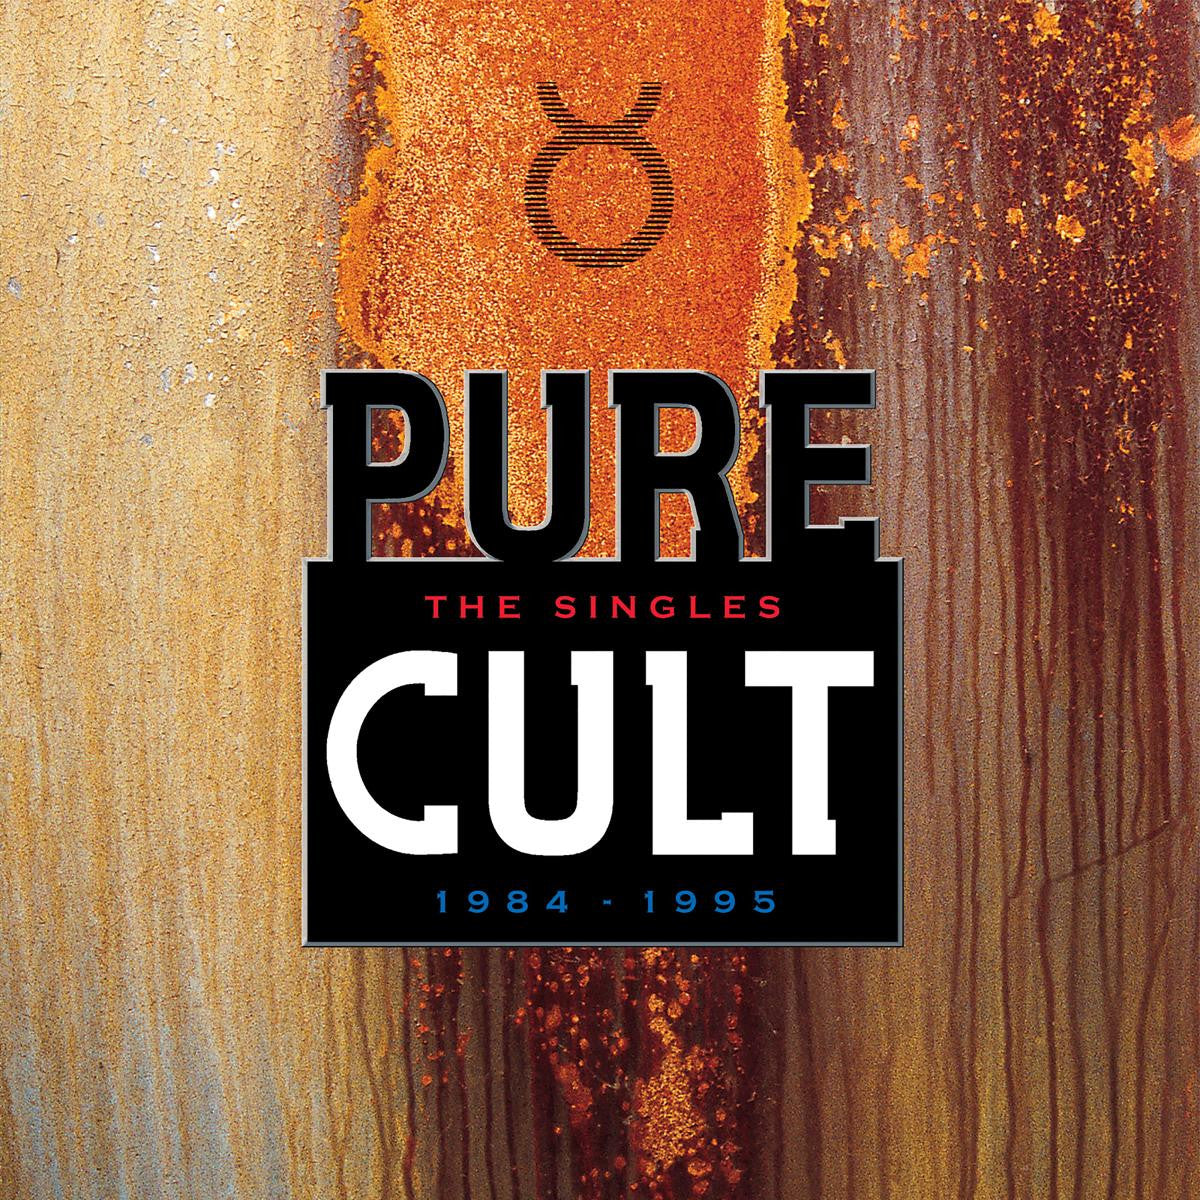 Order The Cult - Pure Cult: The Singles 1984-1995 (2xLP Vinyl)